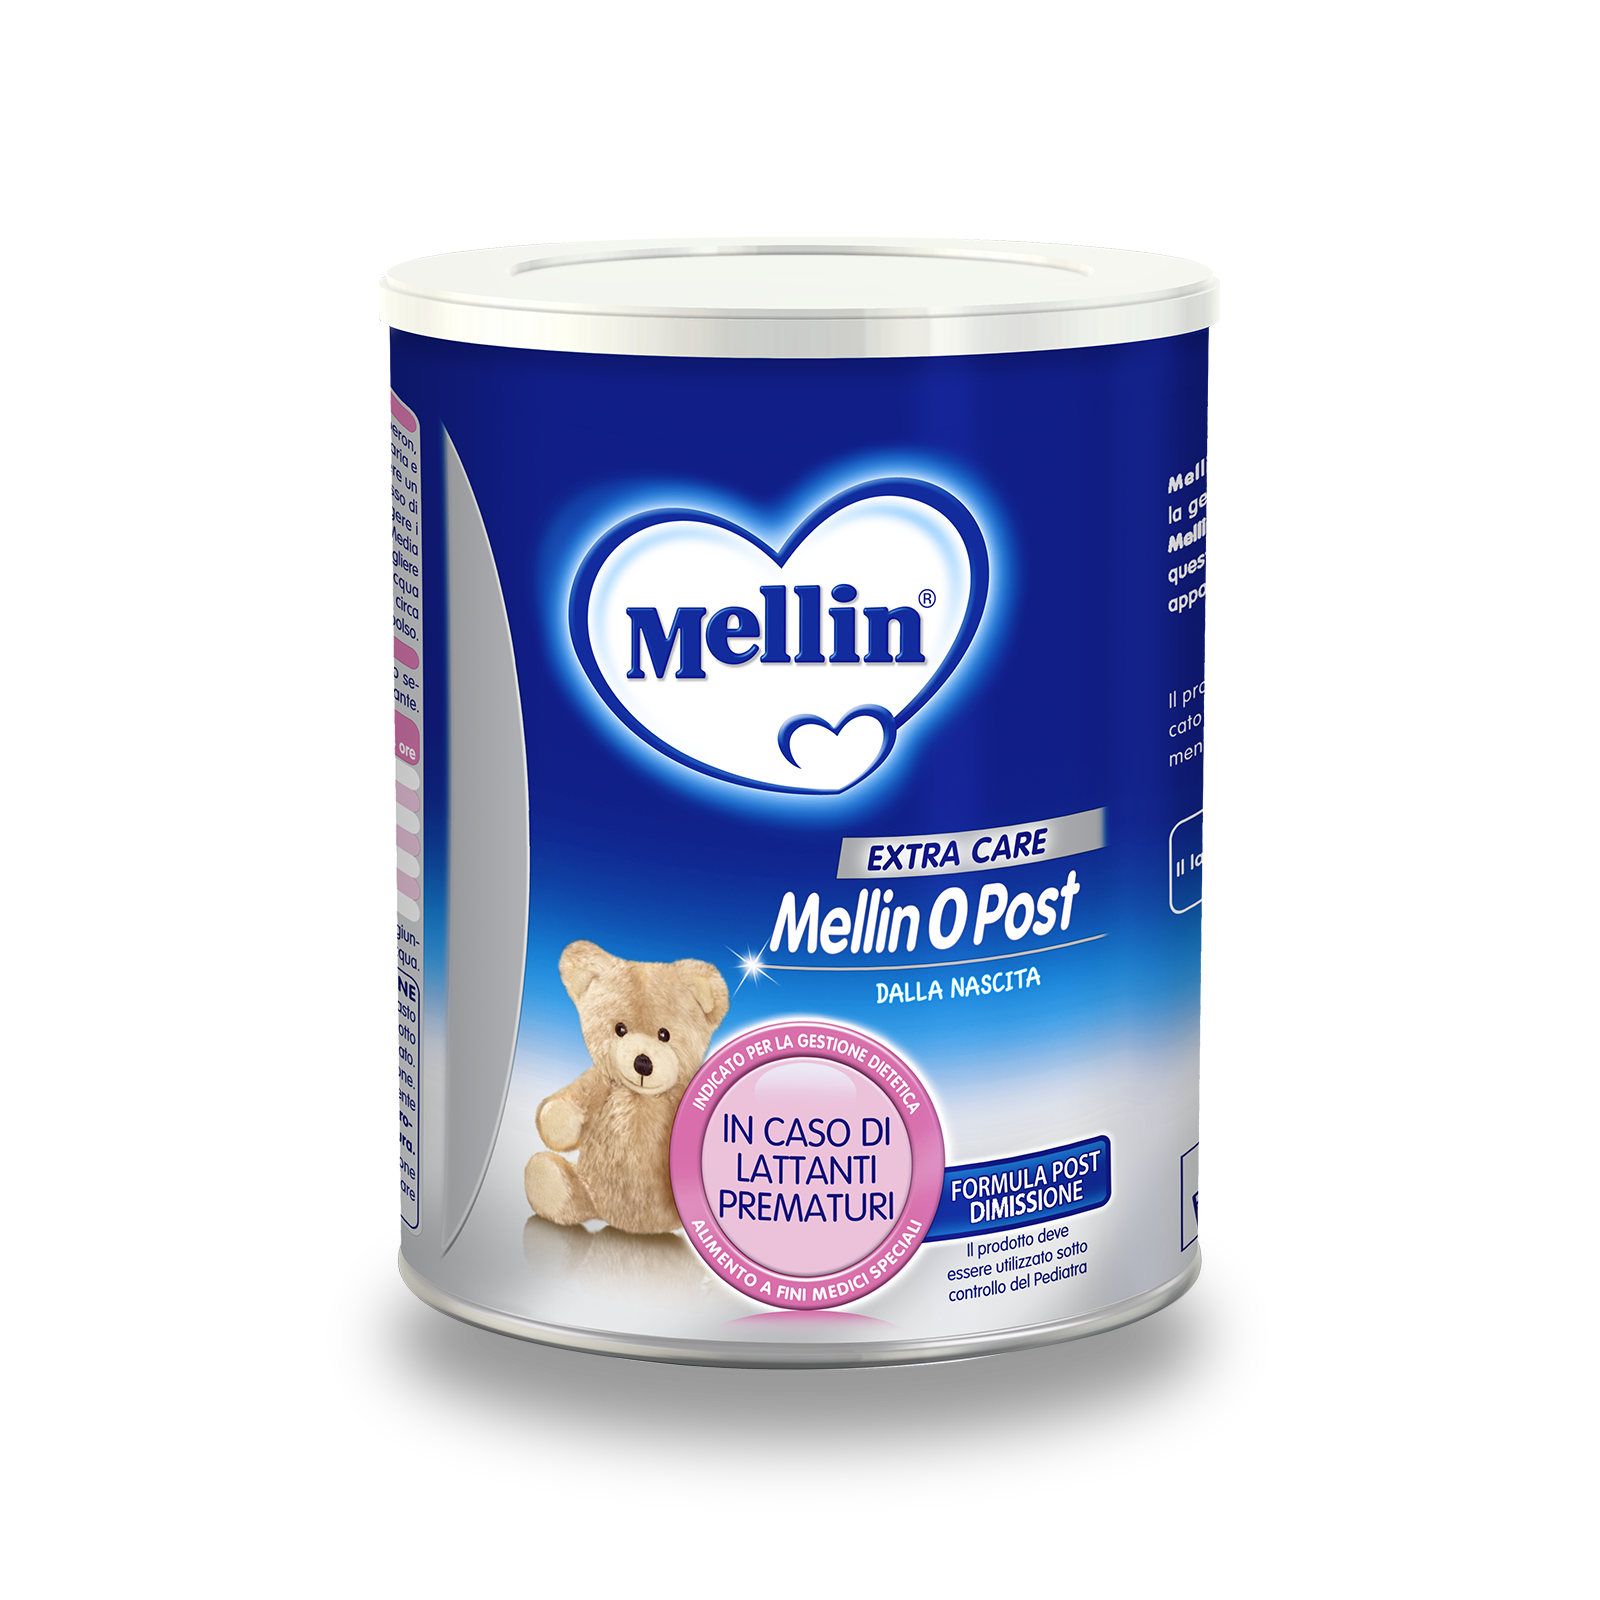 Mellin 0 Post 1 confezione da 400 g | Mellin